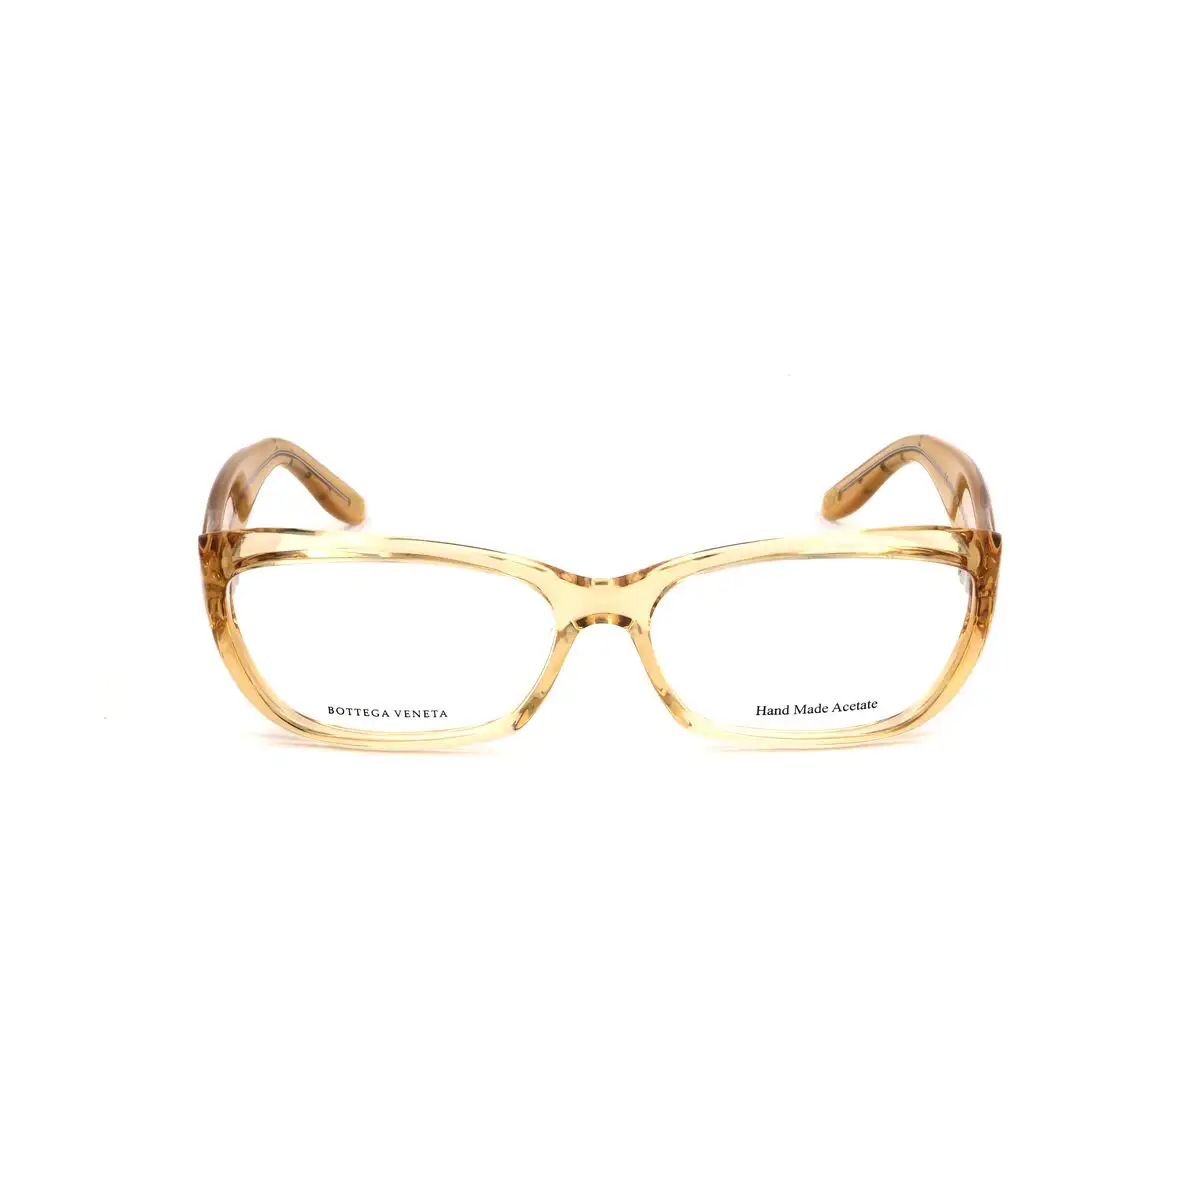 Monture de lunettes femme bottega veneta bv 116 vnl marron_2162. DIAYTAR SENEGAL - Votre Passage vers le Chic et l'Élégance. Naviguez à travers notre boutique en ligne pour trouver des produits qui ajoutent une touche sophistiquée à votre style.